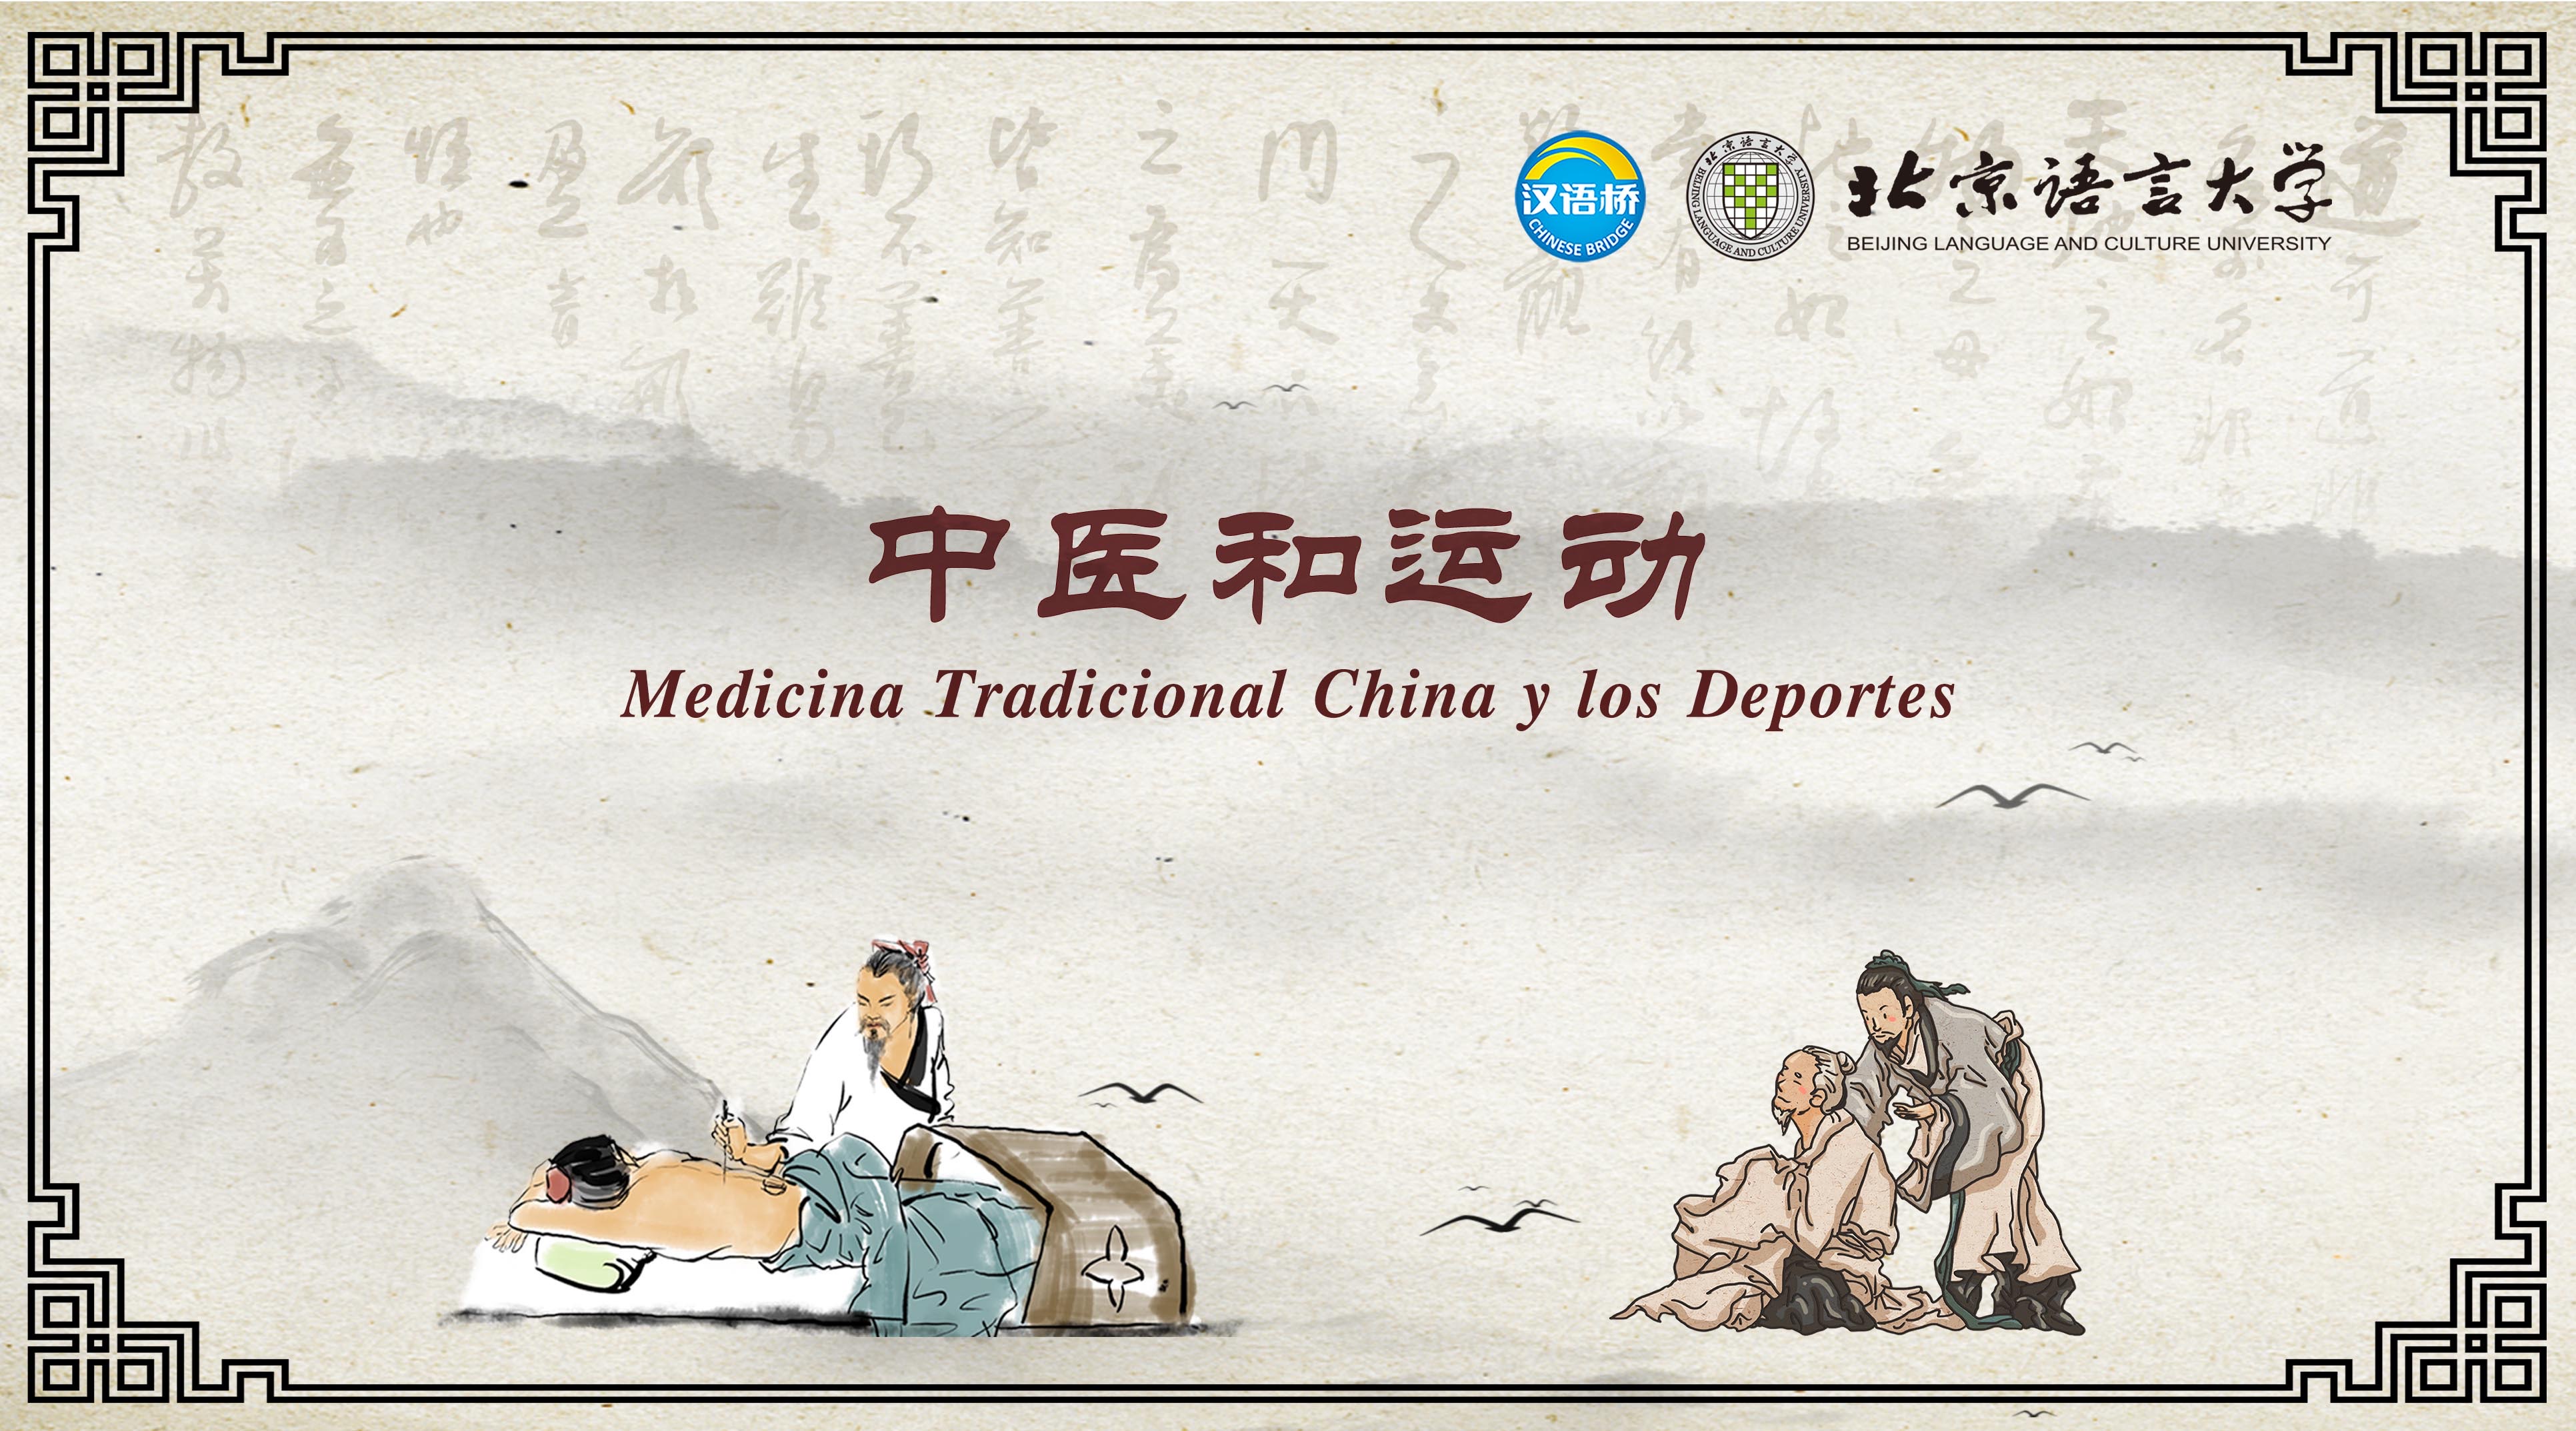 Medicina Tradicional China y los Deportes